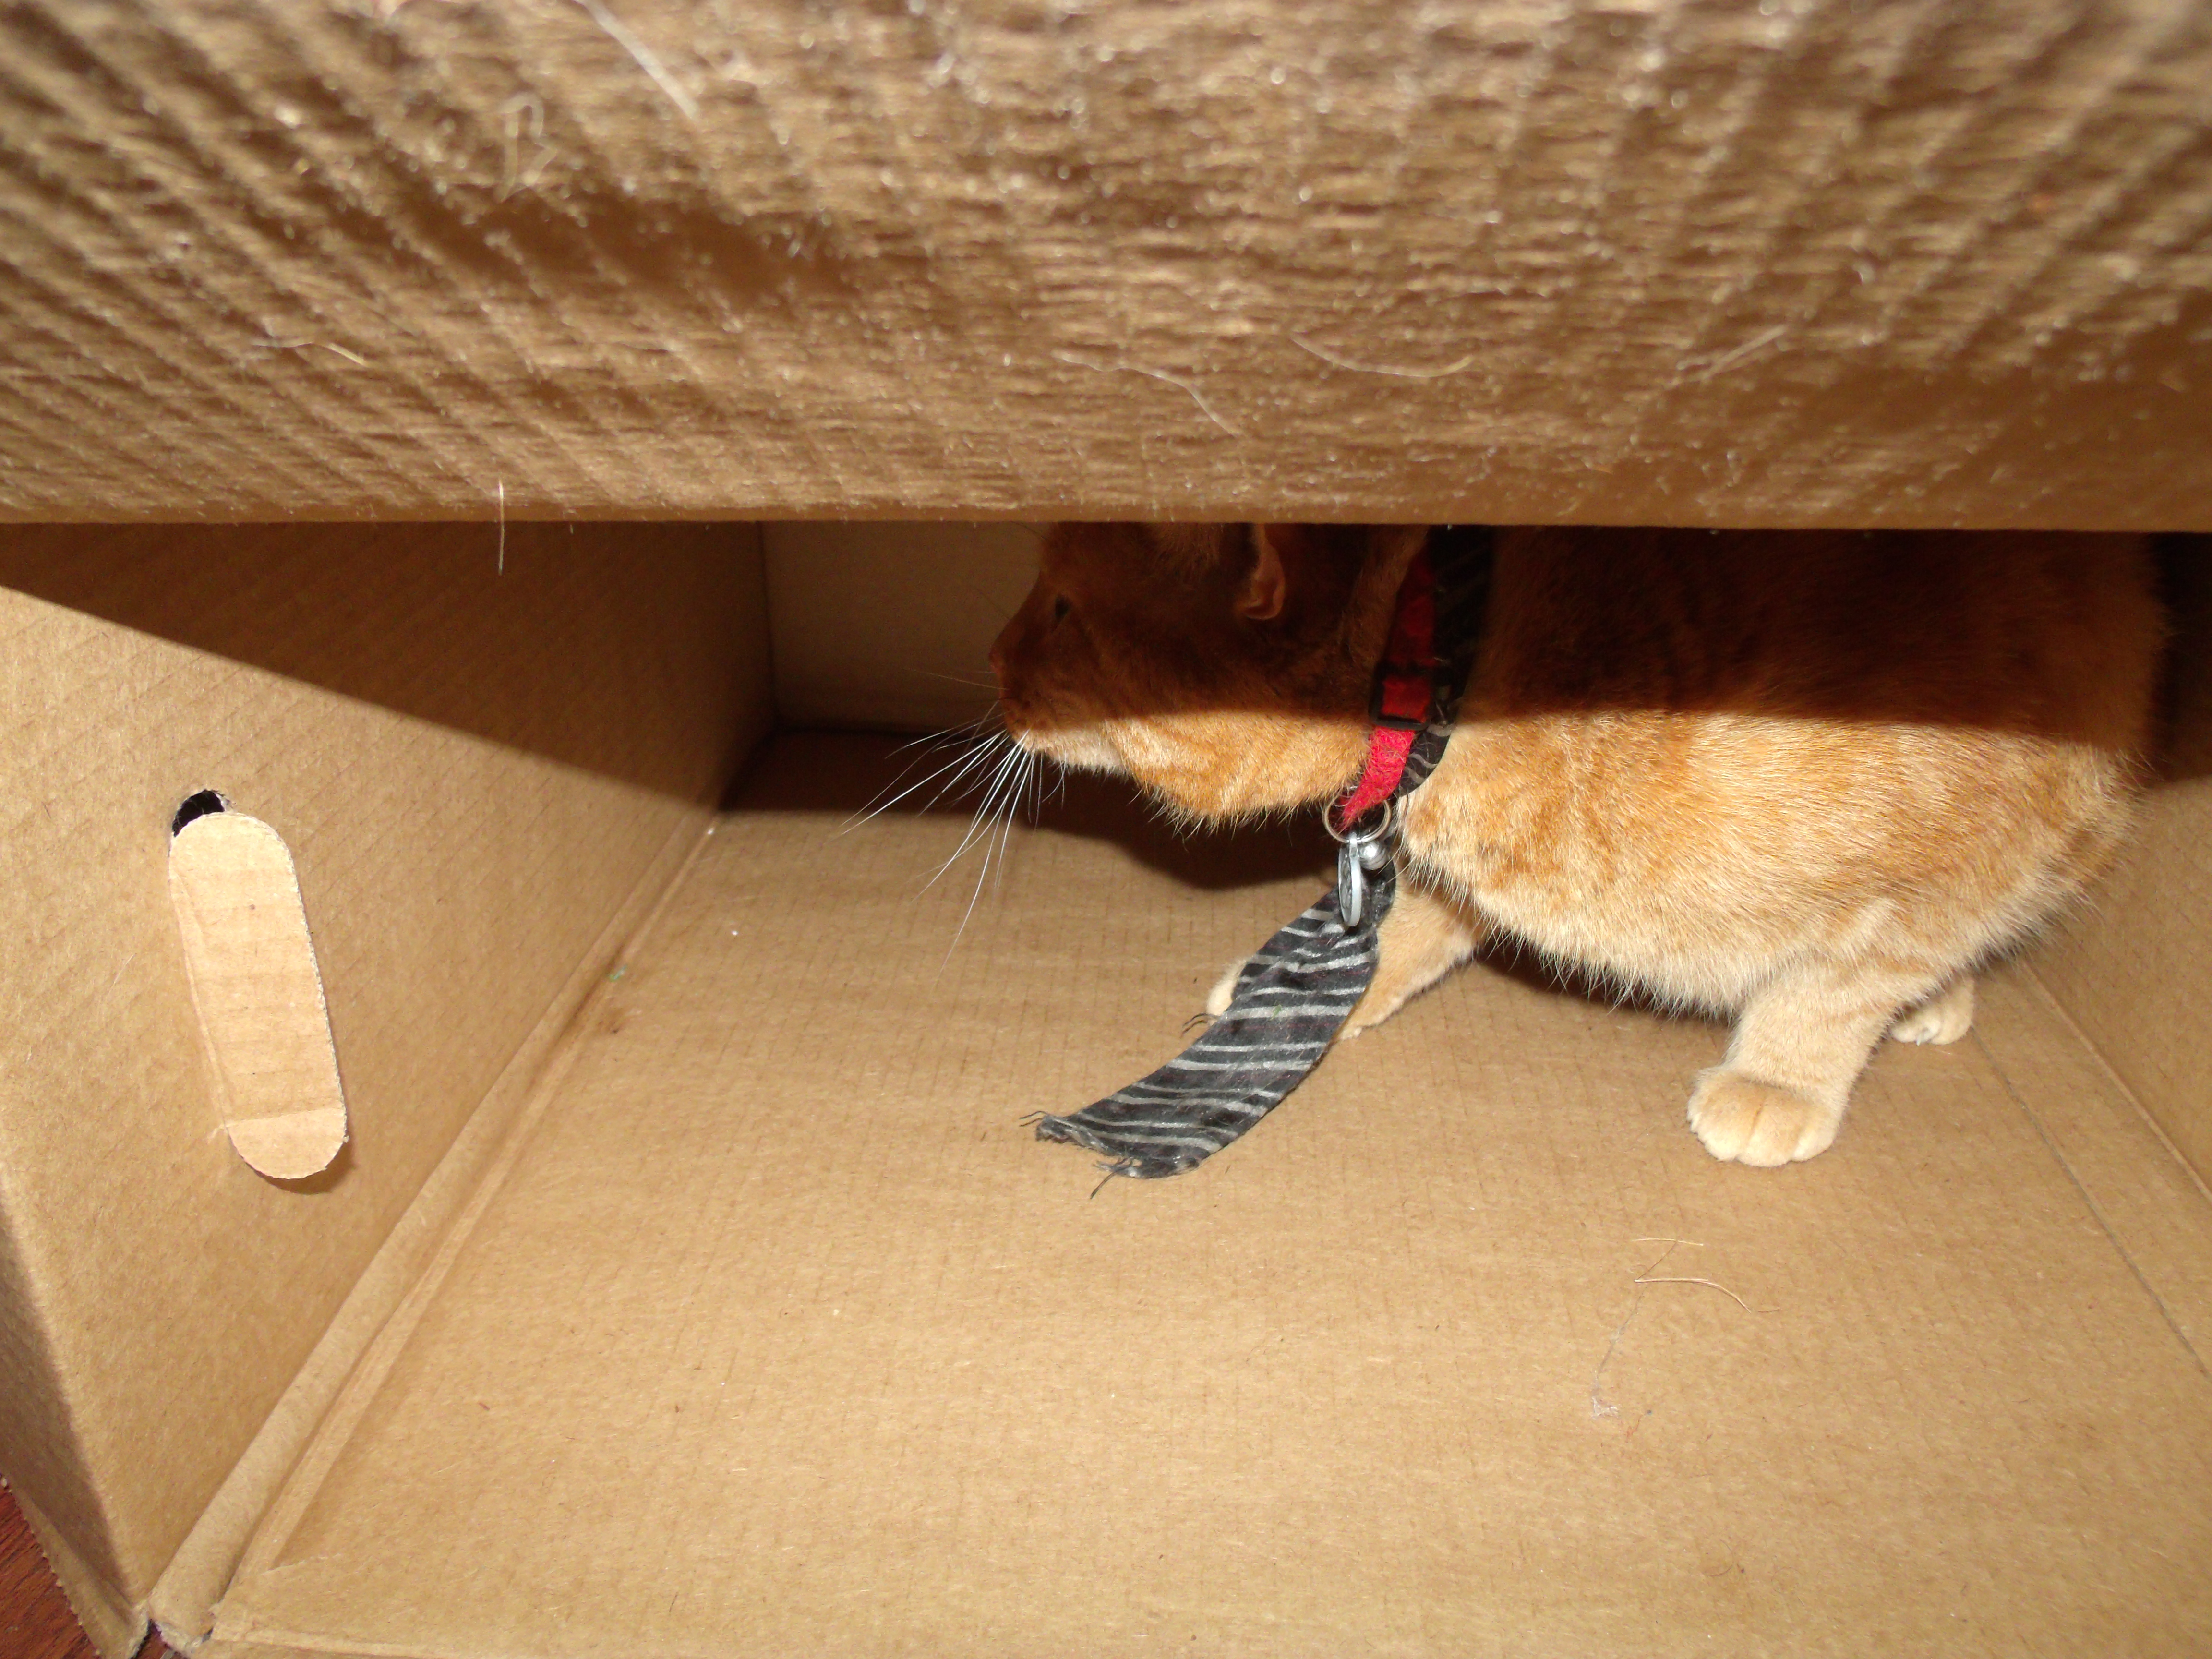 Clément le chat est accroupi dans une grande boîte vide, il regarde vers la gauche. Il porte sa cravate noire ligné argent.